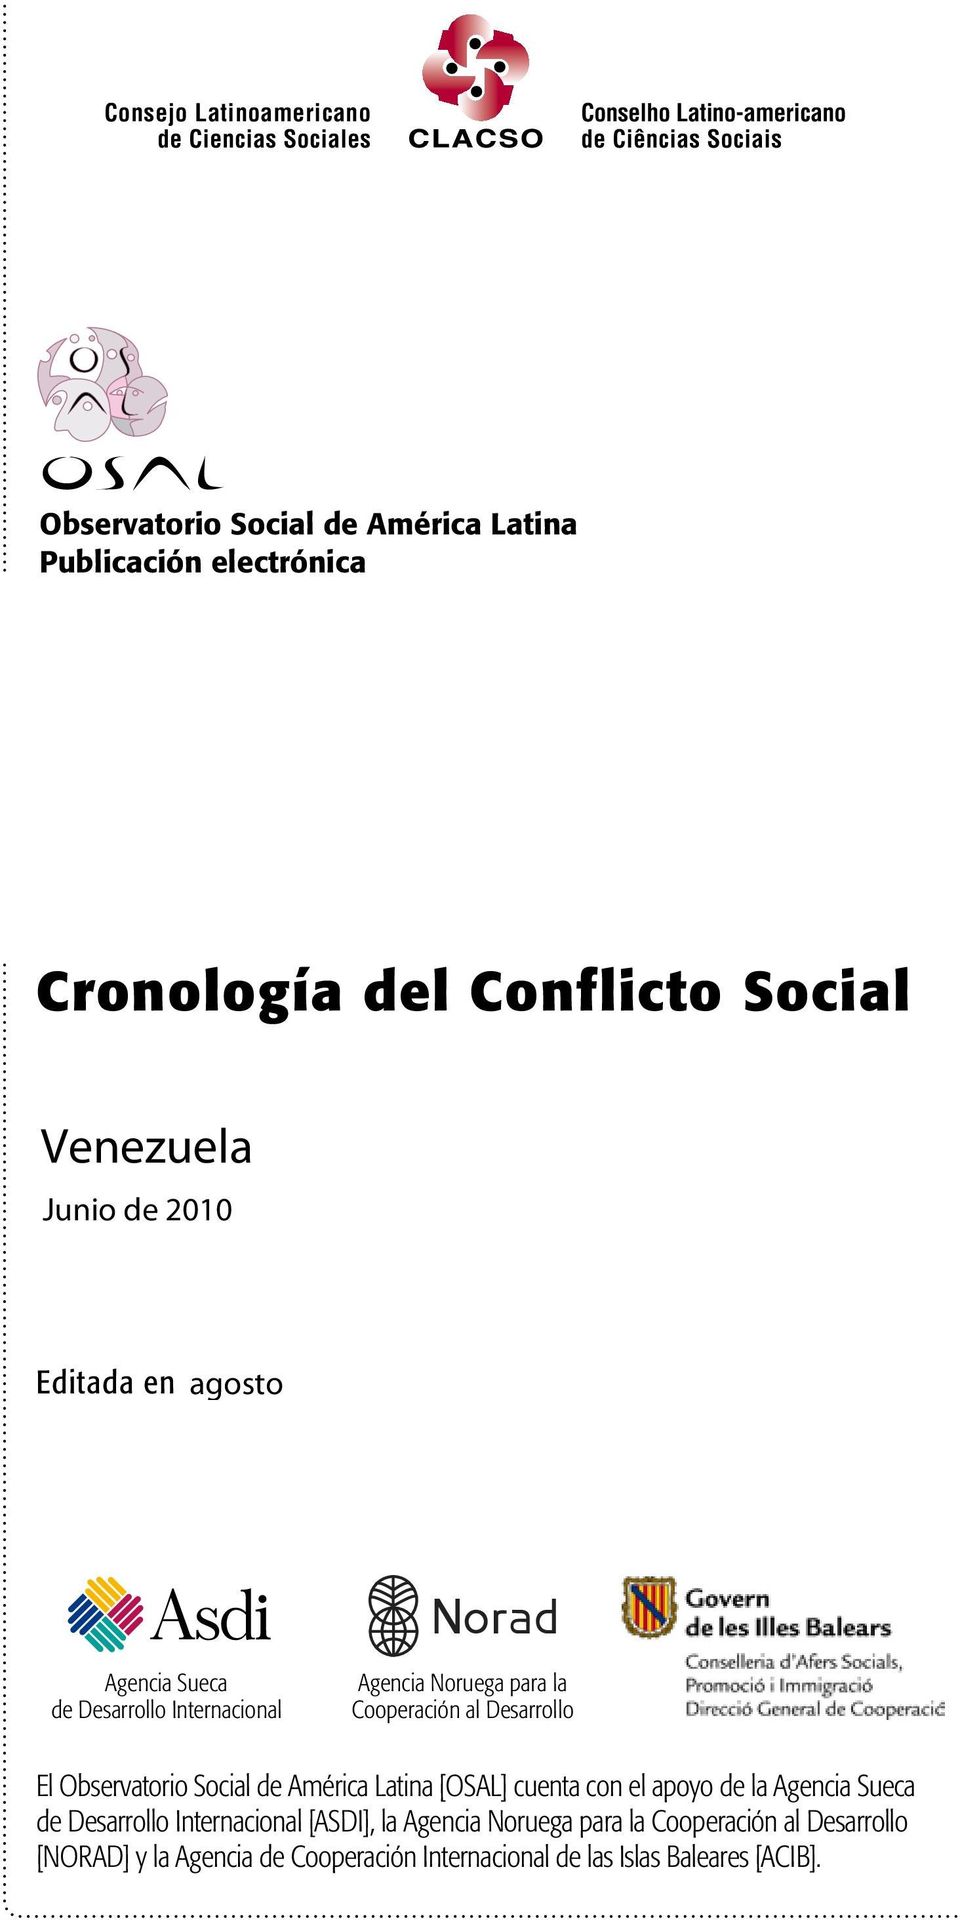 El Observatorio Social de América Latina [OSAL] cuenta con el apoyo de la Agencia Sueca de Desarrollo Internacional [ASDI], la